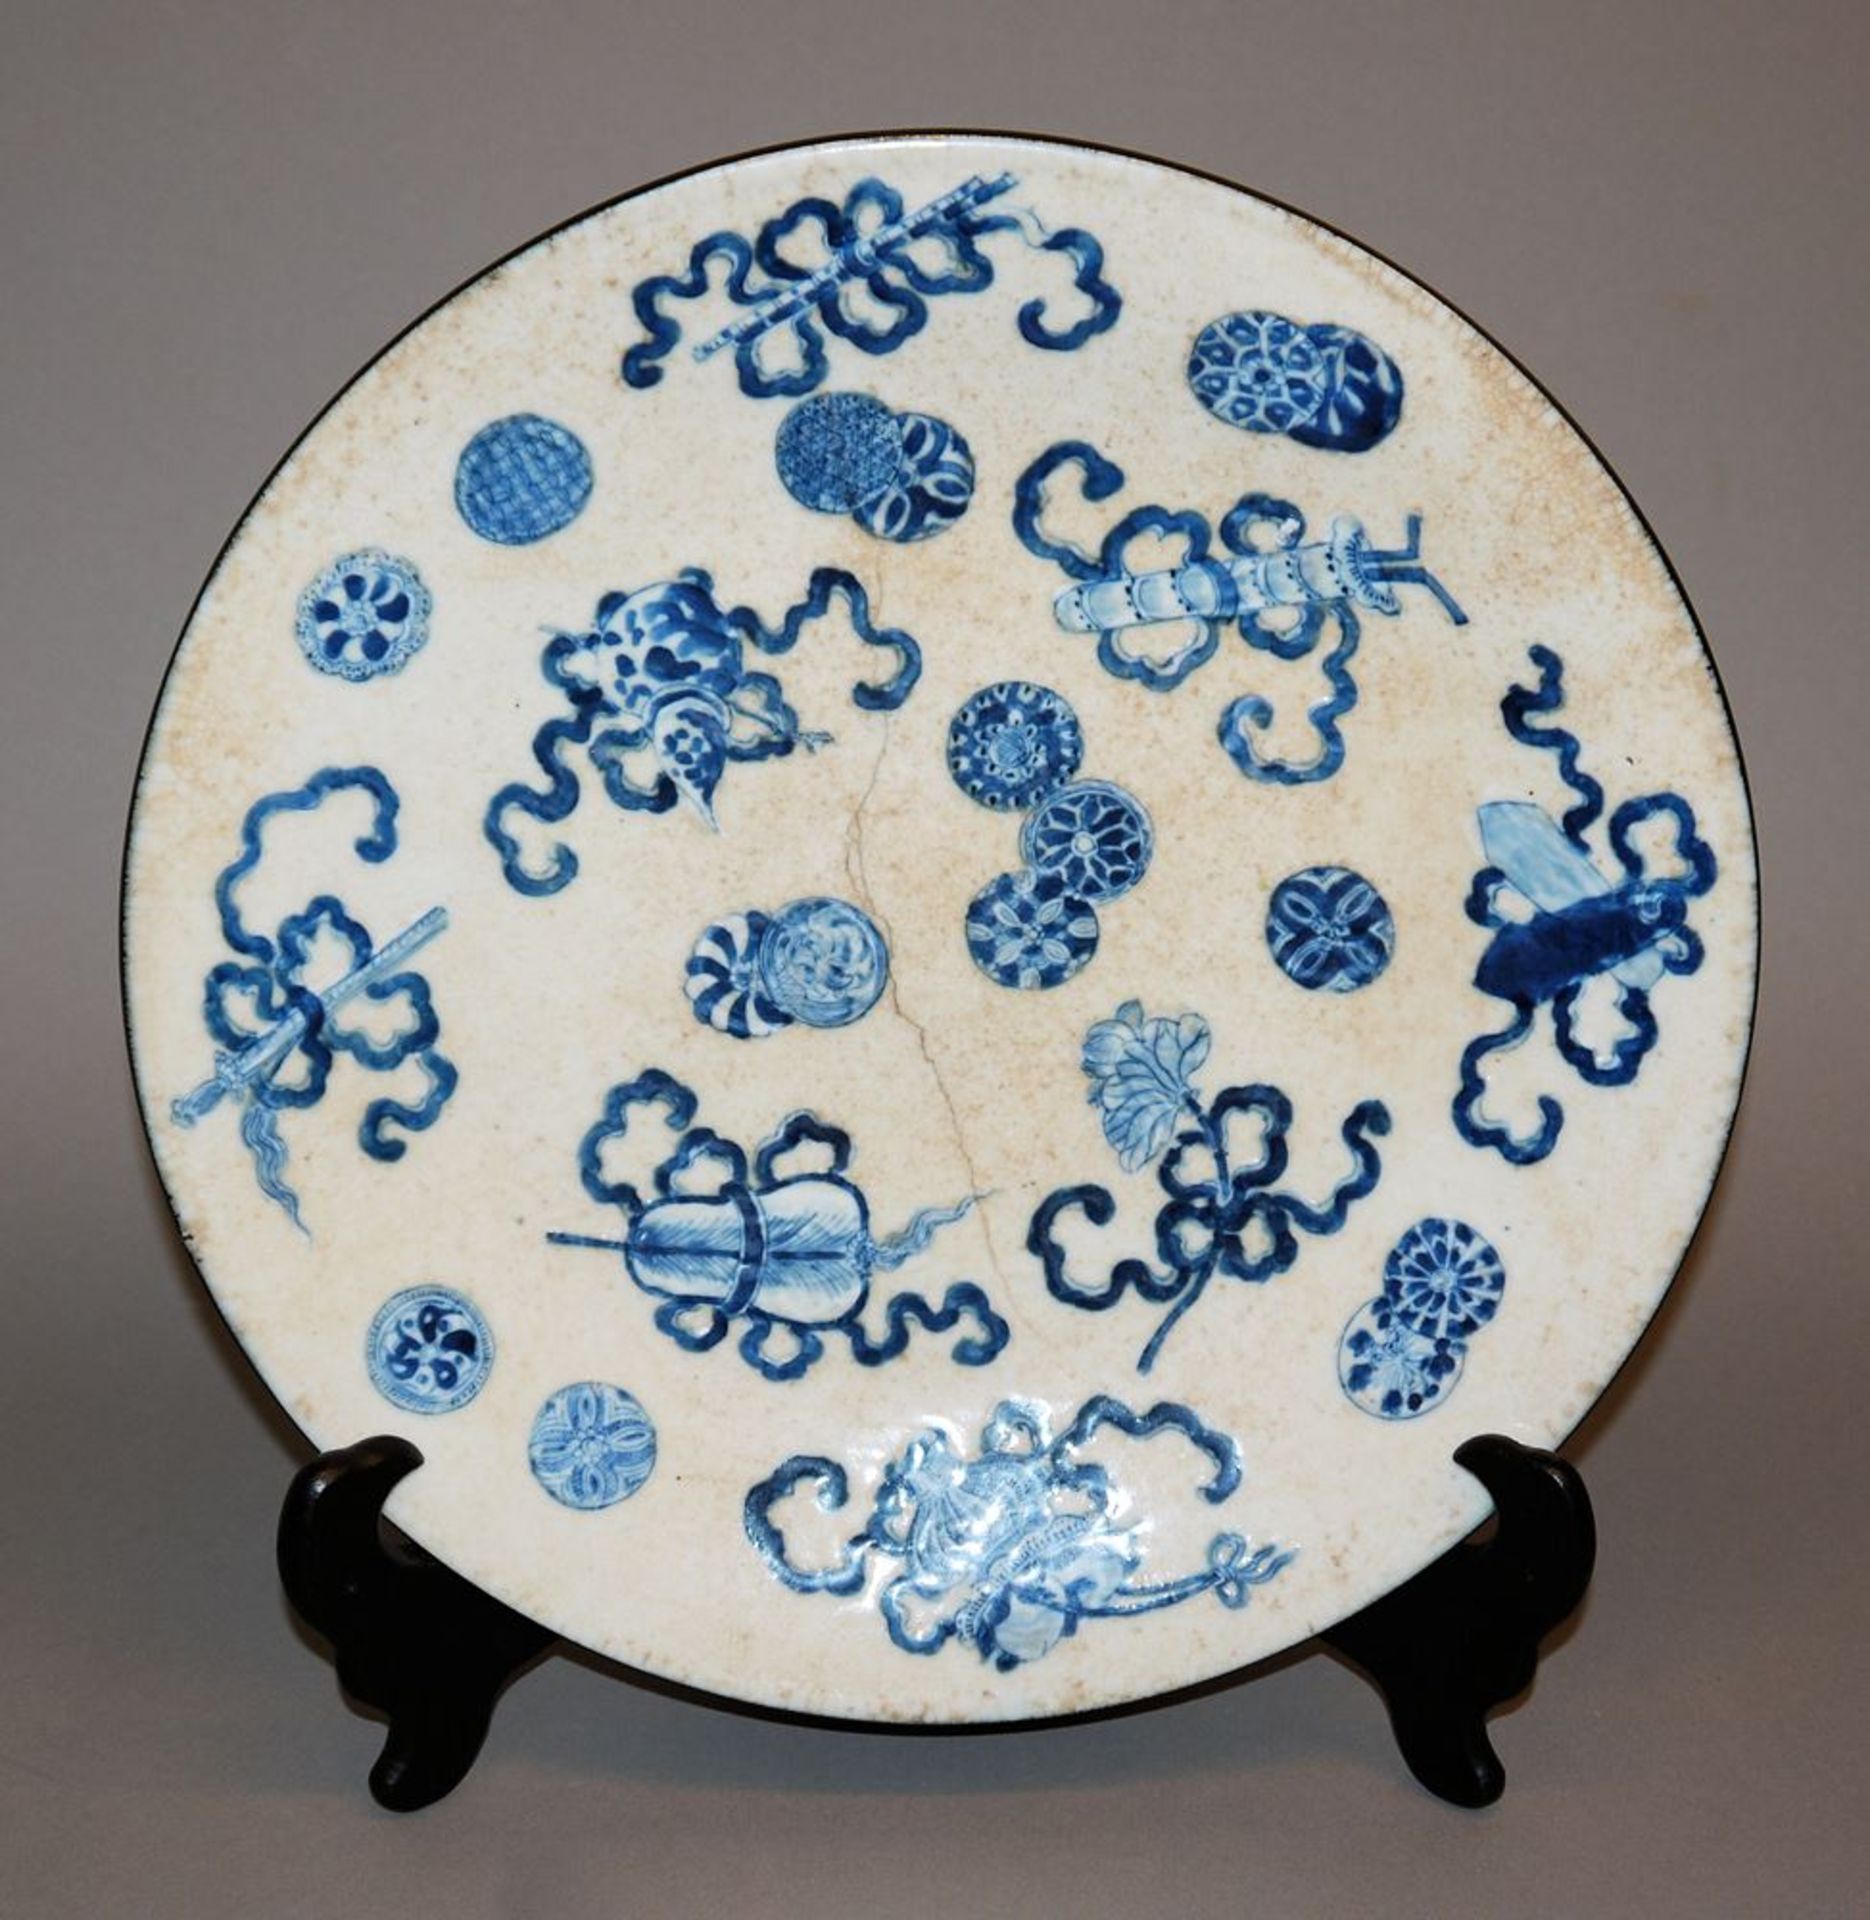 Blauweiß-Teller mit den acht daoistischen Emblemen, späte Qing-Zeit, China 19. Jh.